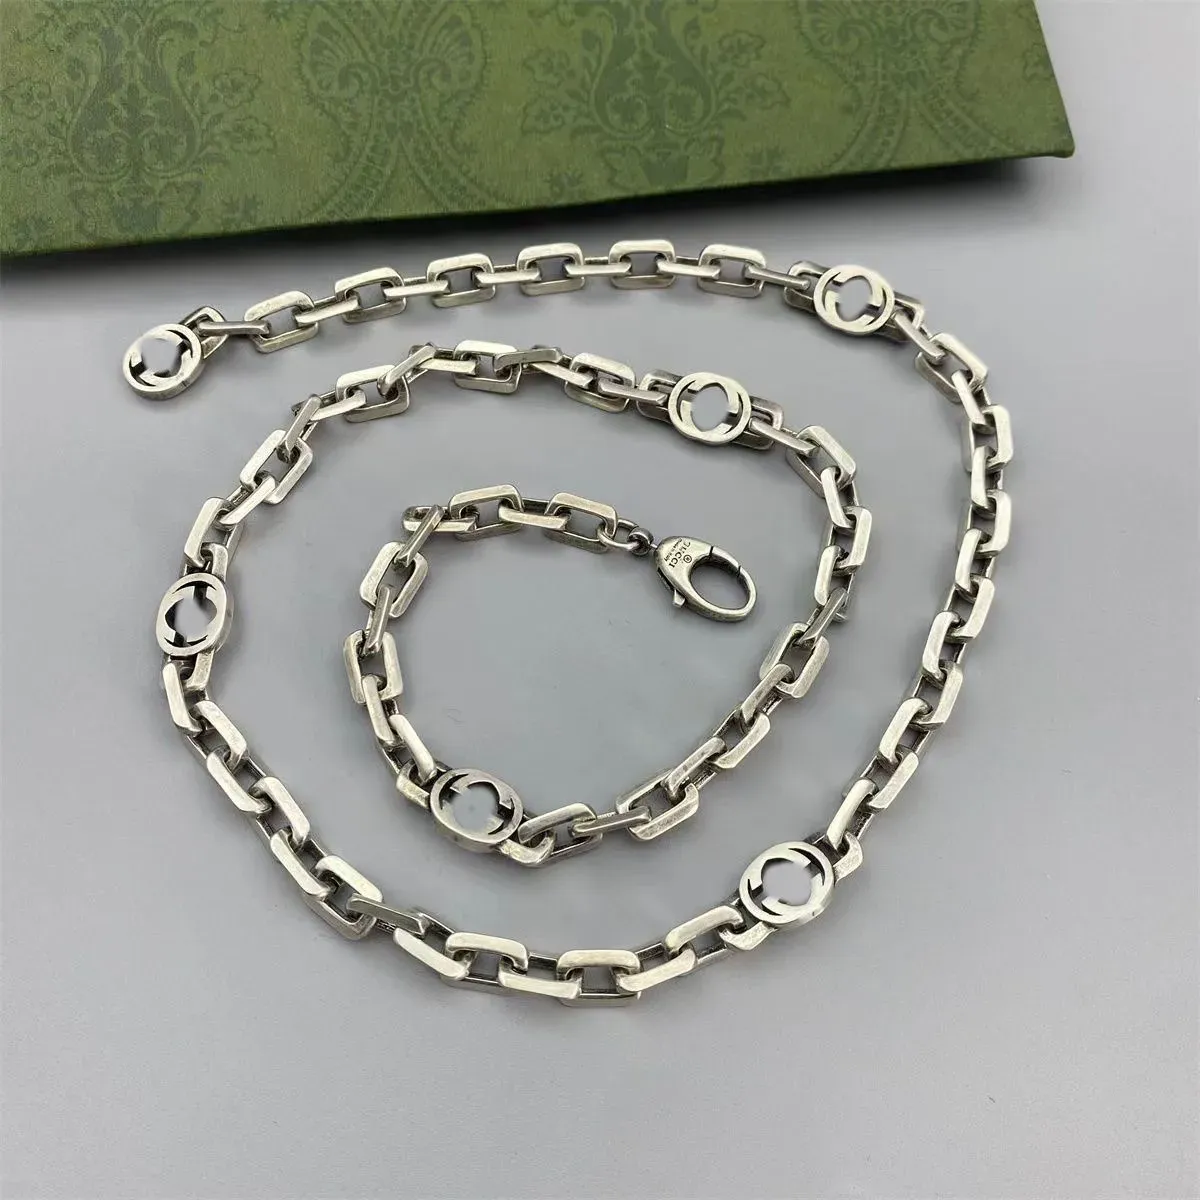 صممه Master الفاخرة ، 925 Sterling Silver Necklace G Jewelry Mashion Necklace هي هدية إكسسوارات الموضة المفضلة لحفل الزفاف ، والحفلات ، والسفر